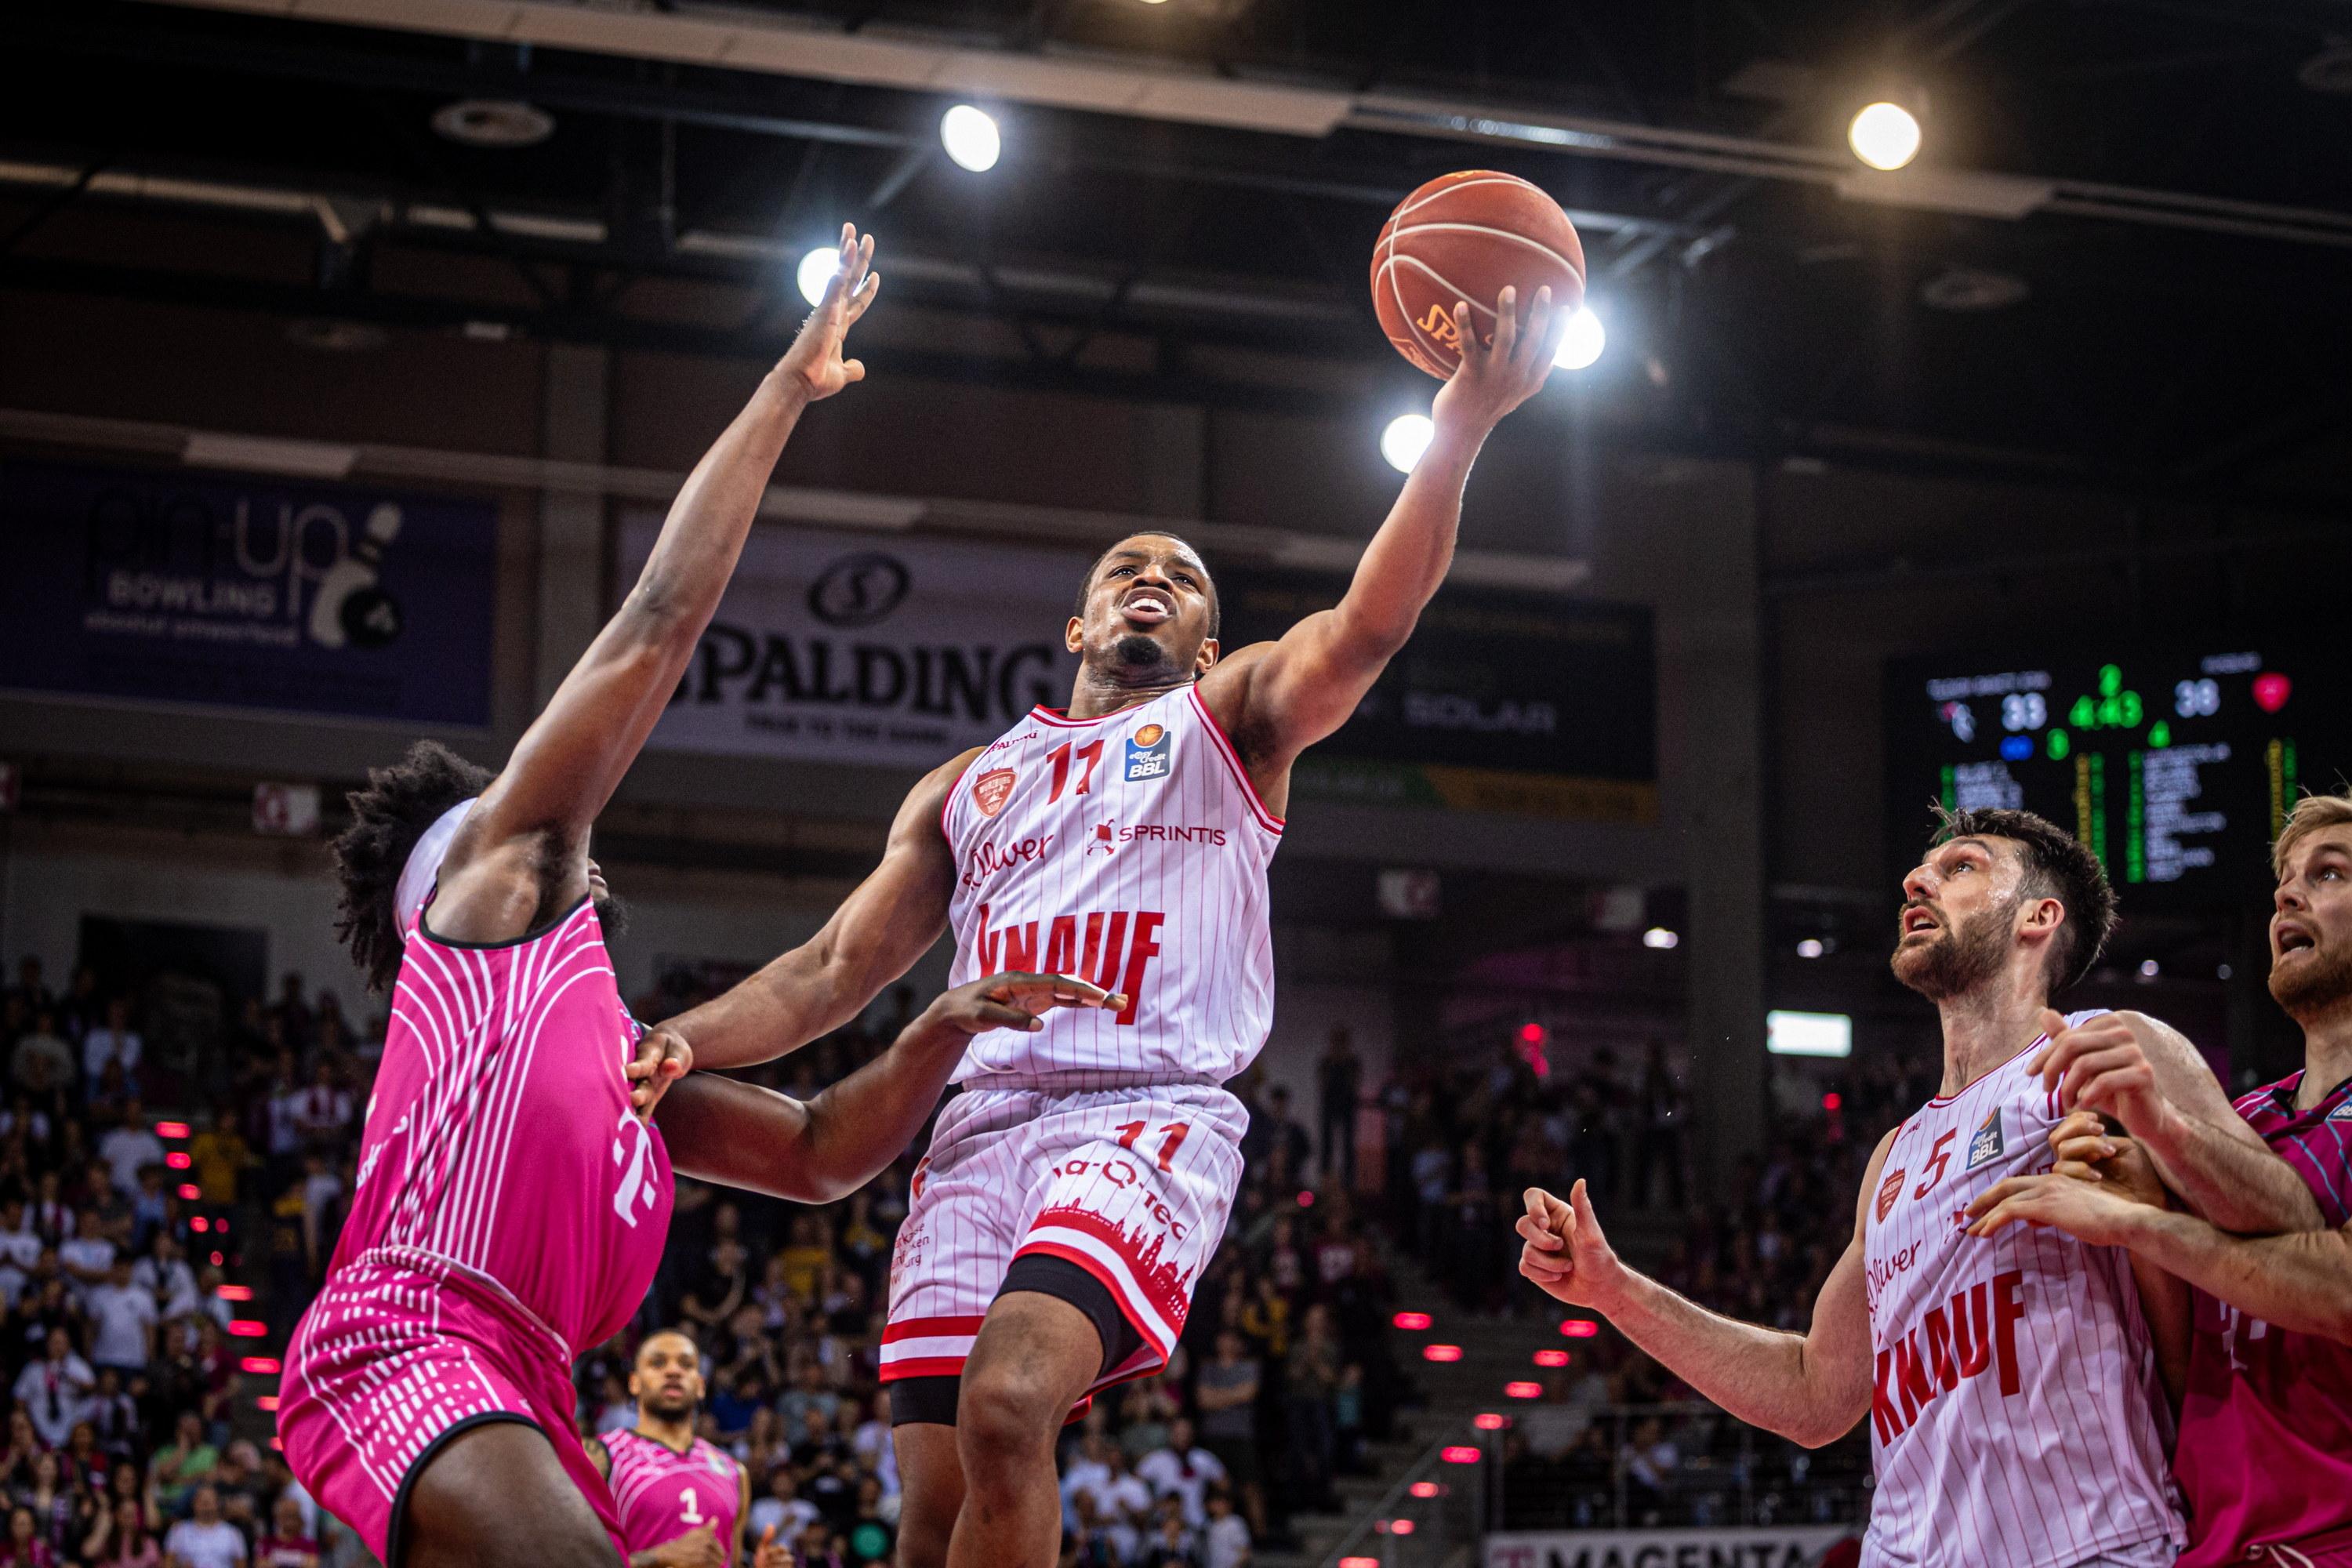 Die Würzburg Baskets (23:9) setzen ihrer überragenden Saison in der easyCredit Basketball Bundesliga einen weiteren Höhepunkt auf und stehen nach dem 100:91-Sieg bei den Telekom Baskets Bonn (19:13) als Playoff-Teilnehmer fest.